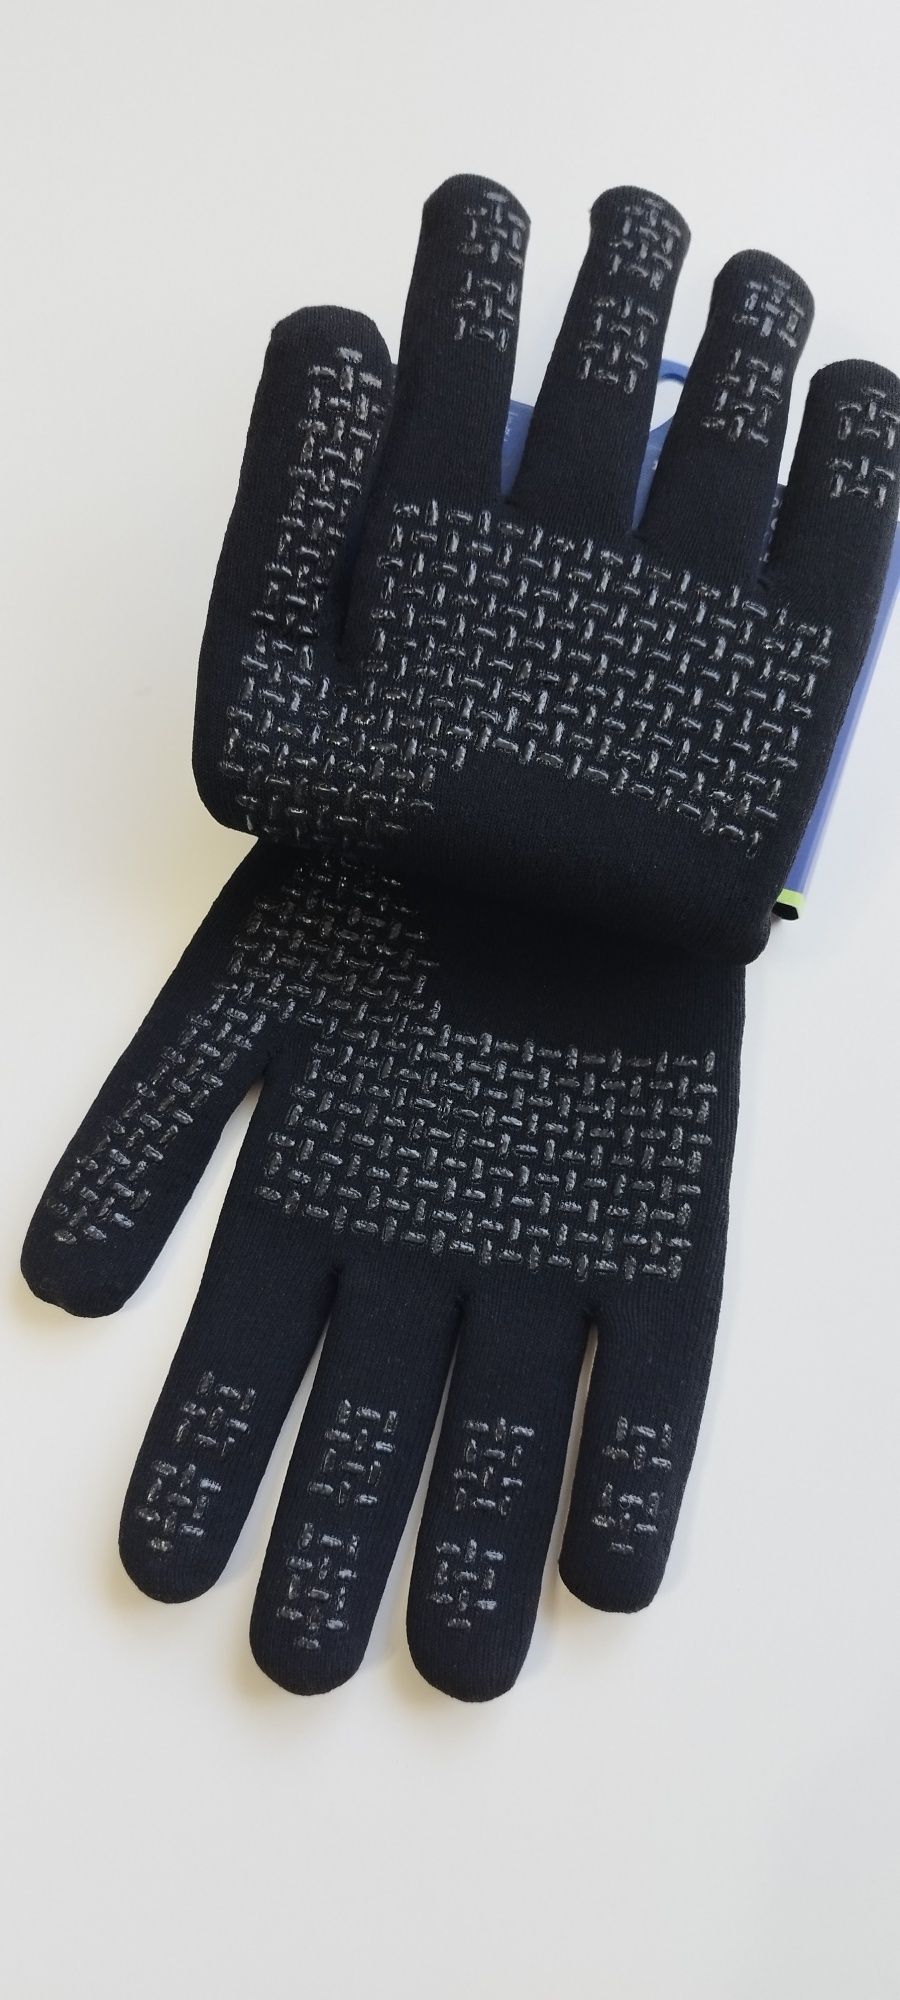 Wodoodporne rękawice sportowe Sealskinz z wełna merino XL